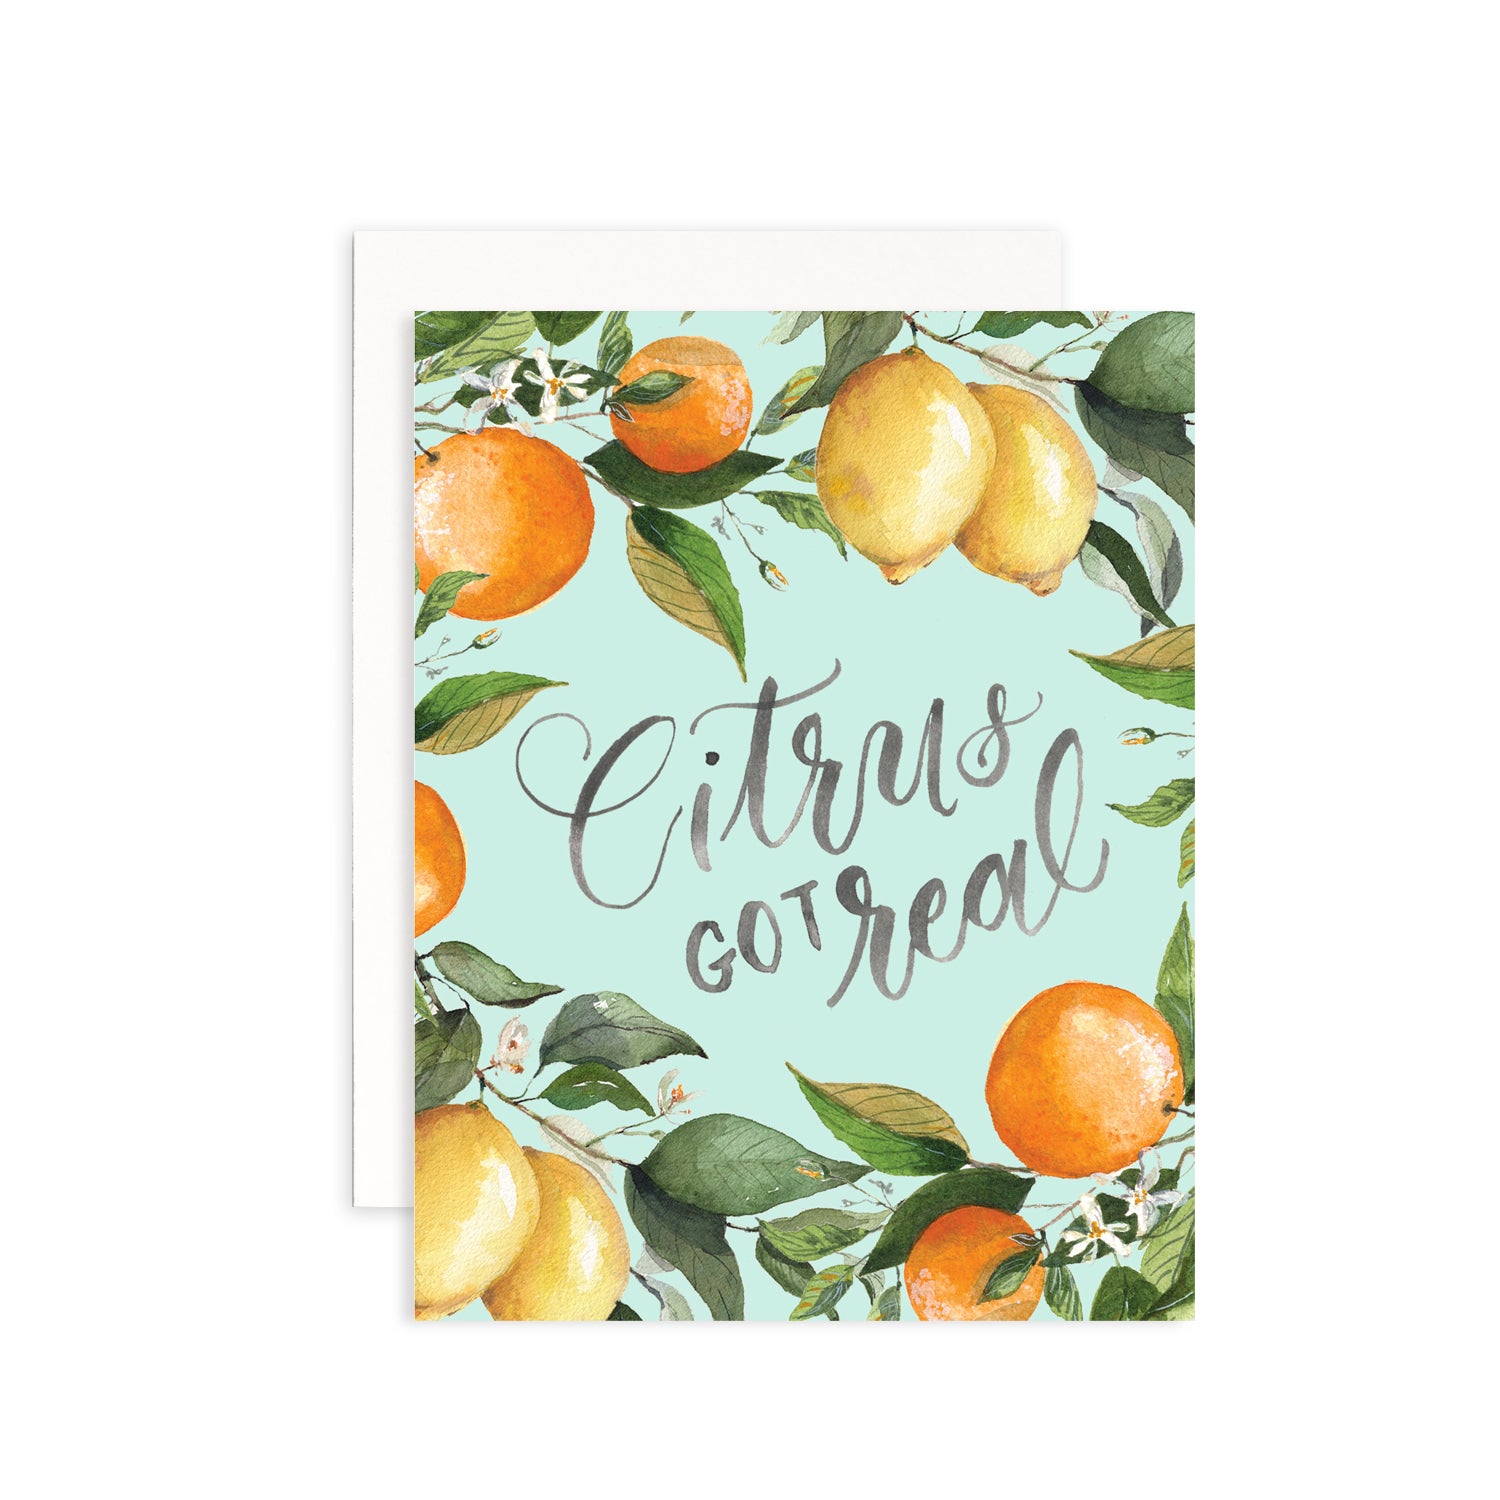 Citrus Got Real Watercolor Greeting Card